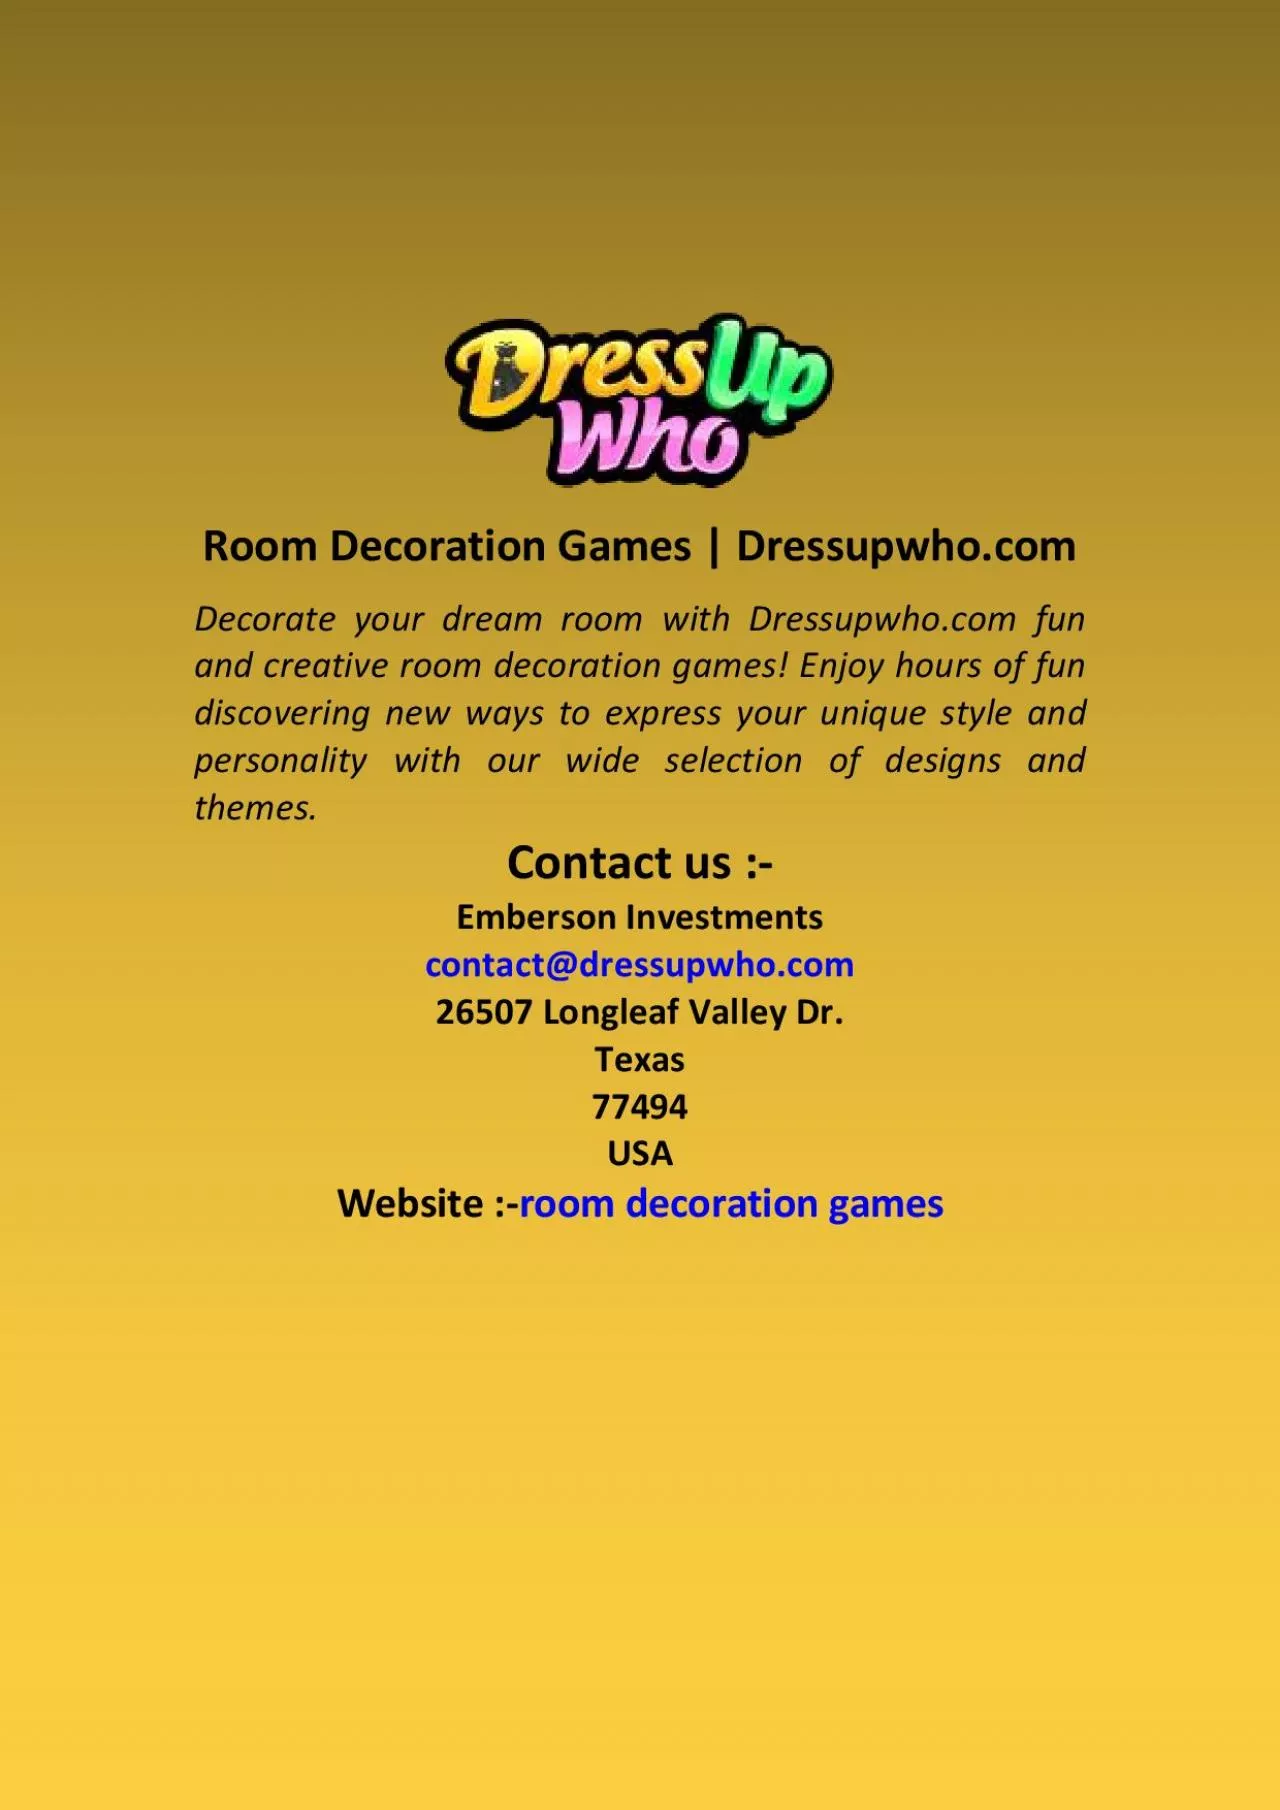 Room Decoration Games | Dressupwho.com